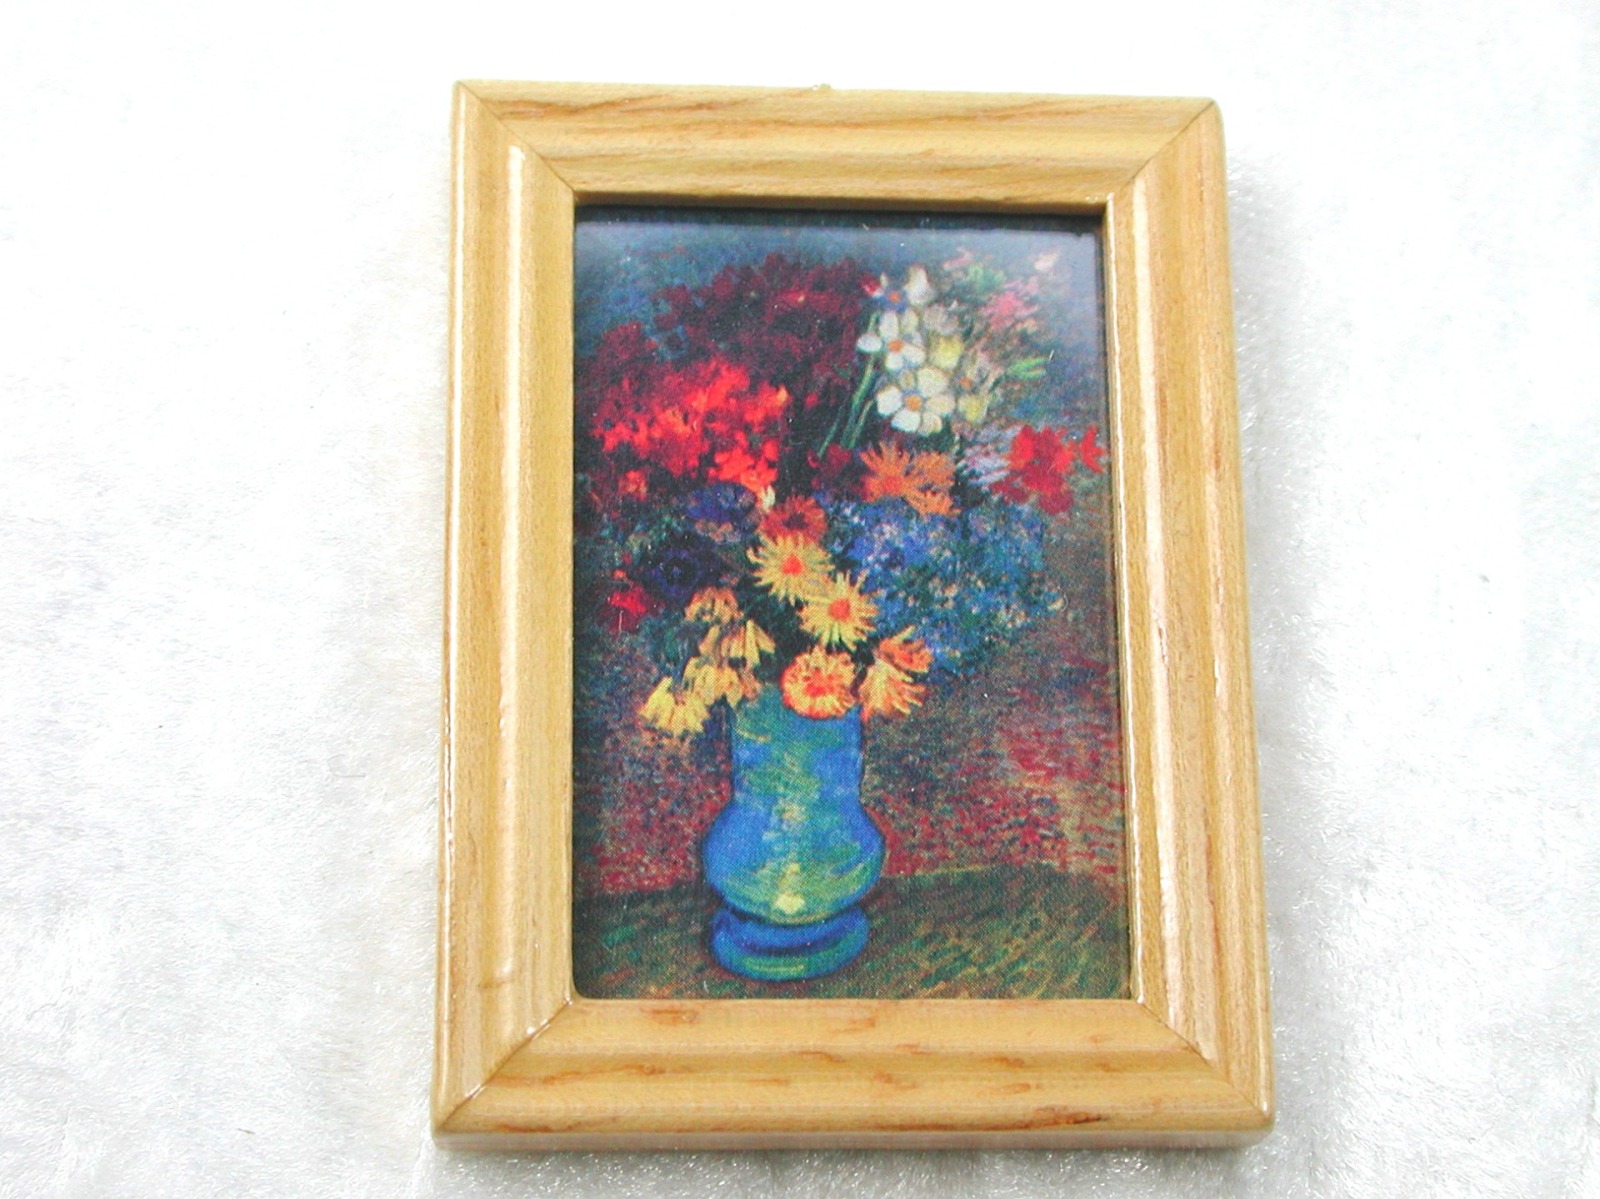 Gemäldekopie Blumenstrauß im Holzrahmen 4,5 x 5,5 x 0,5 cm